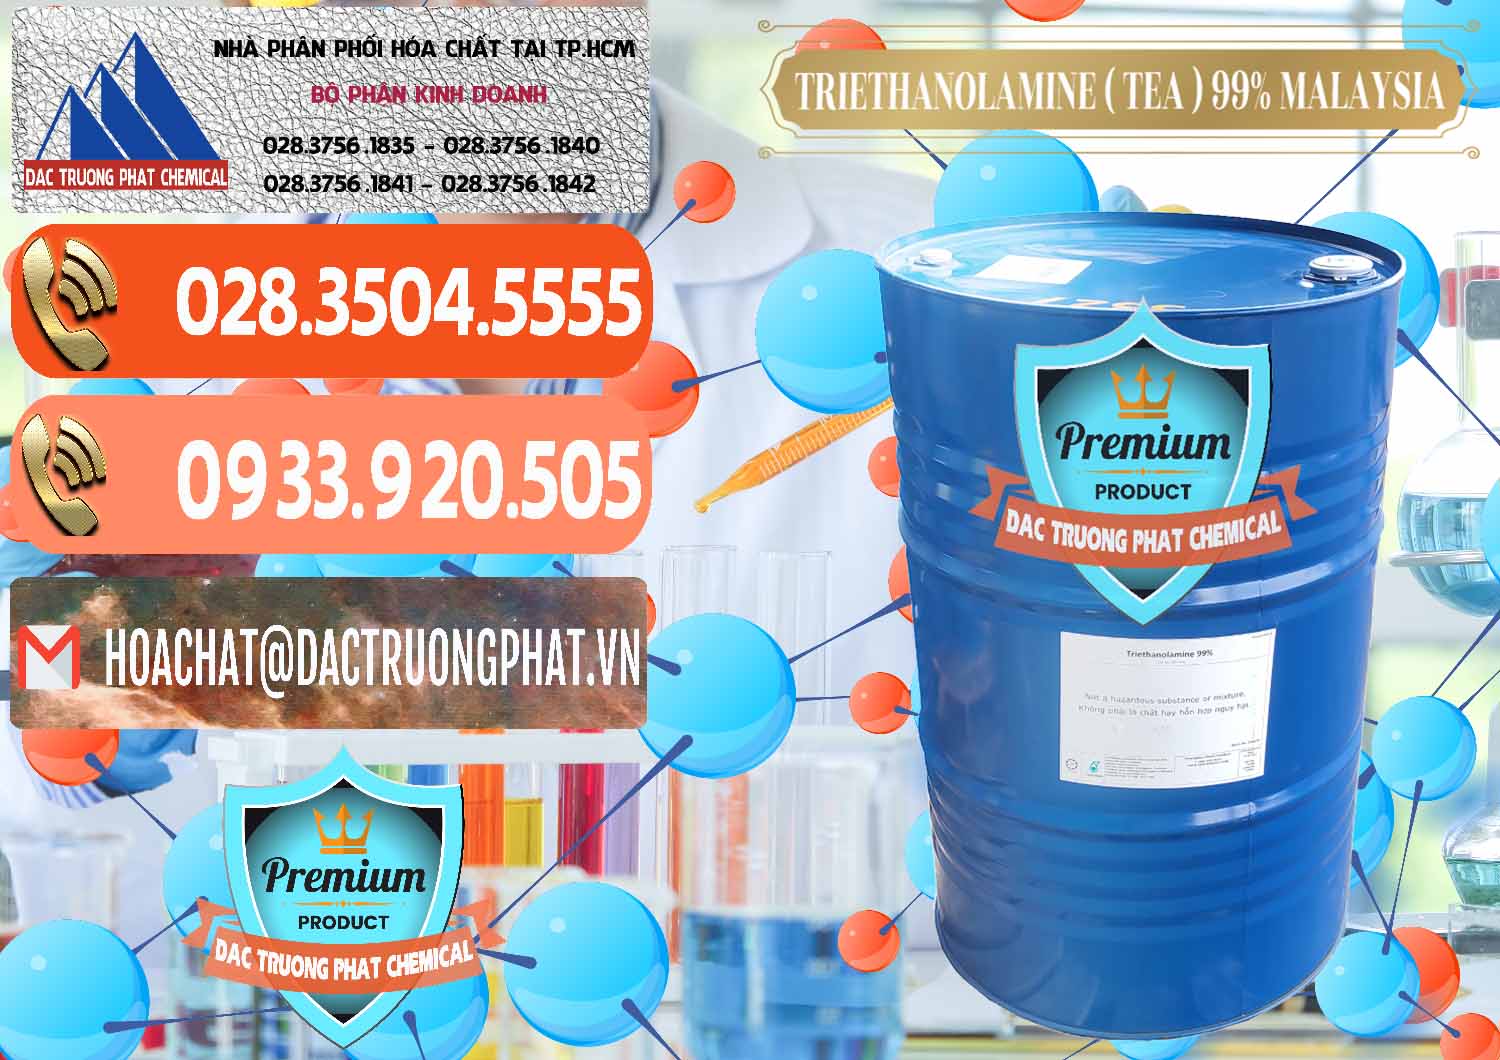 Nơi chuyên cung cấp - bán TEA - Triethanolamine 99% Mã Lai Malaysia - 0323 - Nhà cung cấp ( phân phối ) hóa chất tại TP.HCM - hoachatmientay.com